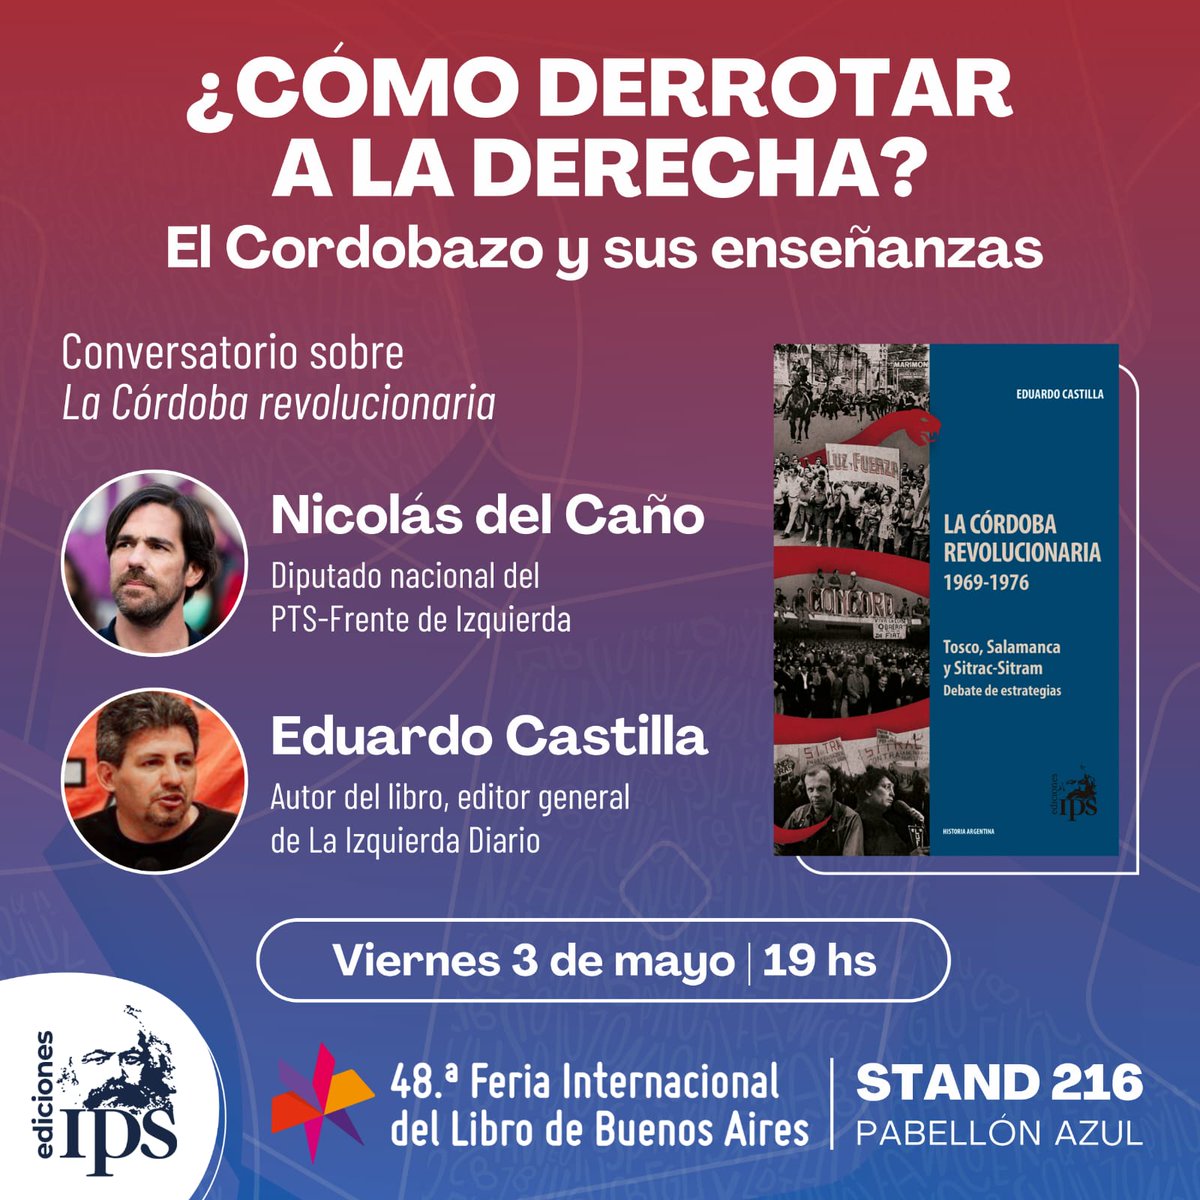 Este viernes 3 de mayo, conversatorio en la @ferialibro sobre 'La Córdoba revolucionaria' con @NicolasdelCano y el autor @castillaeduardo 🔷️ En nuestro stand 216, pabellón azul. A las 19 hs.